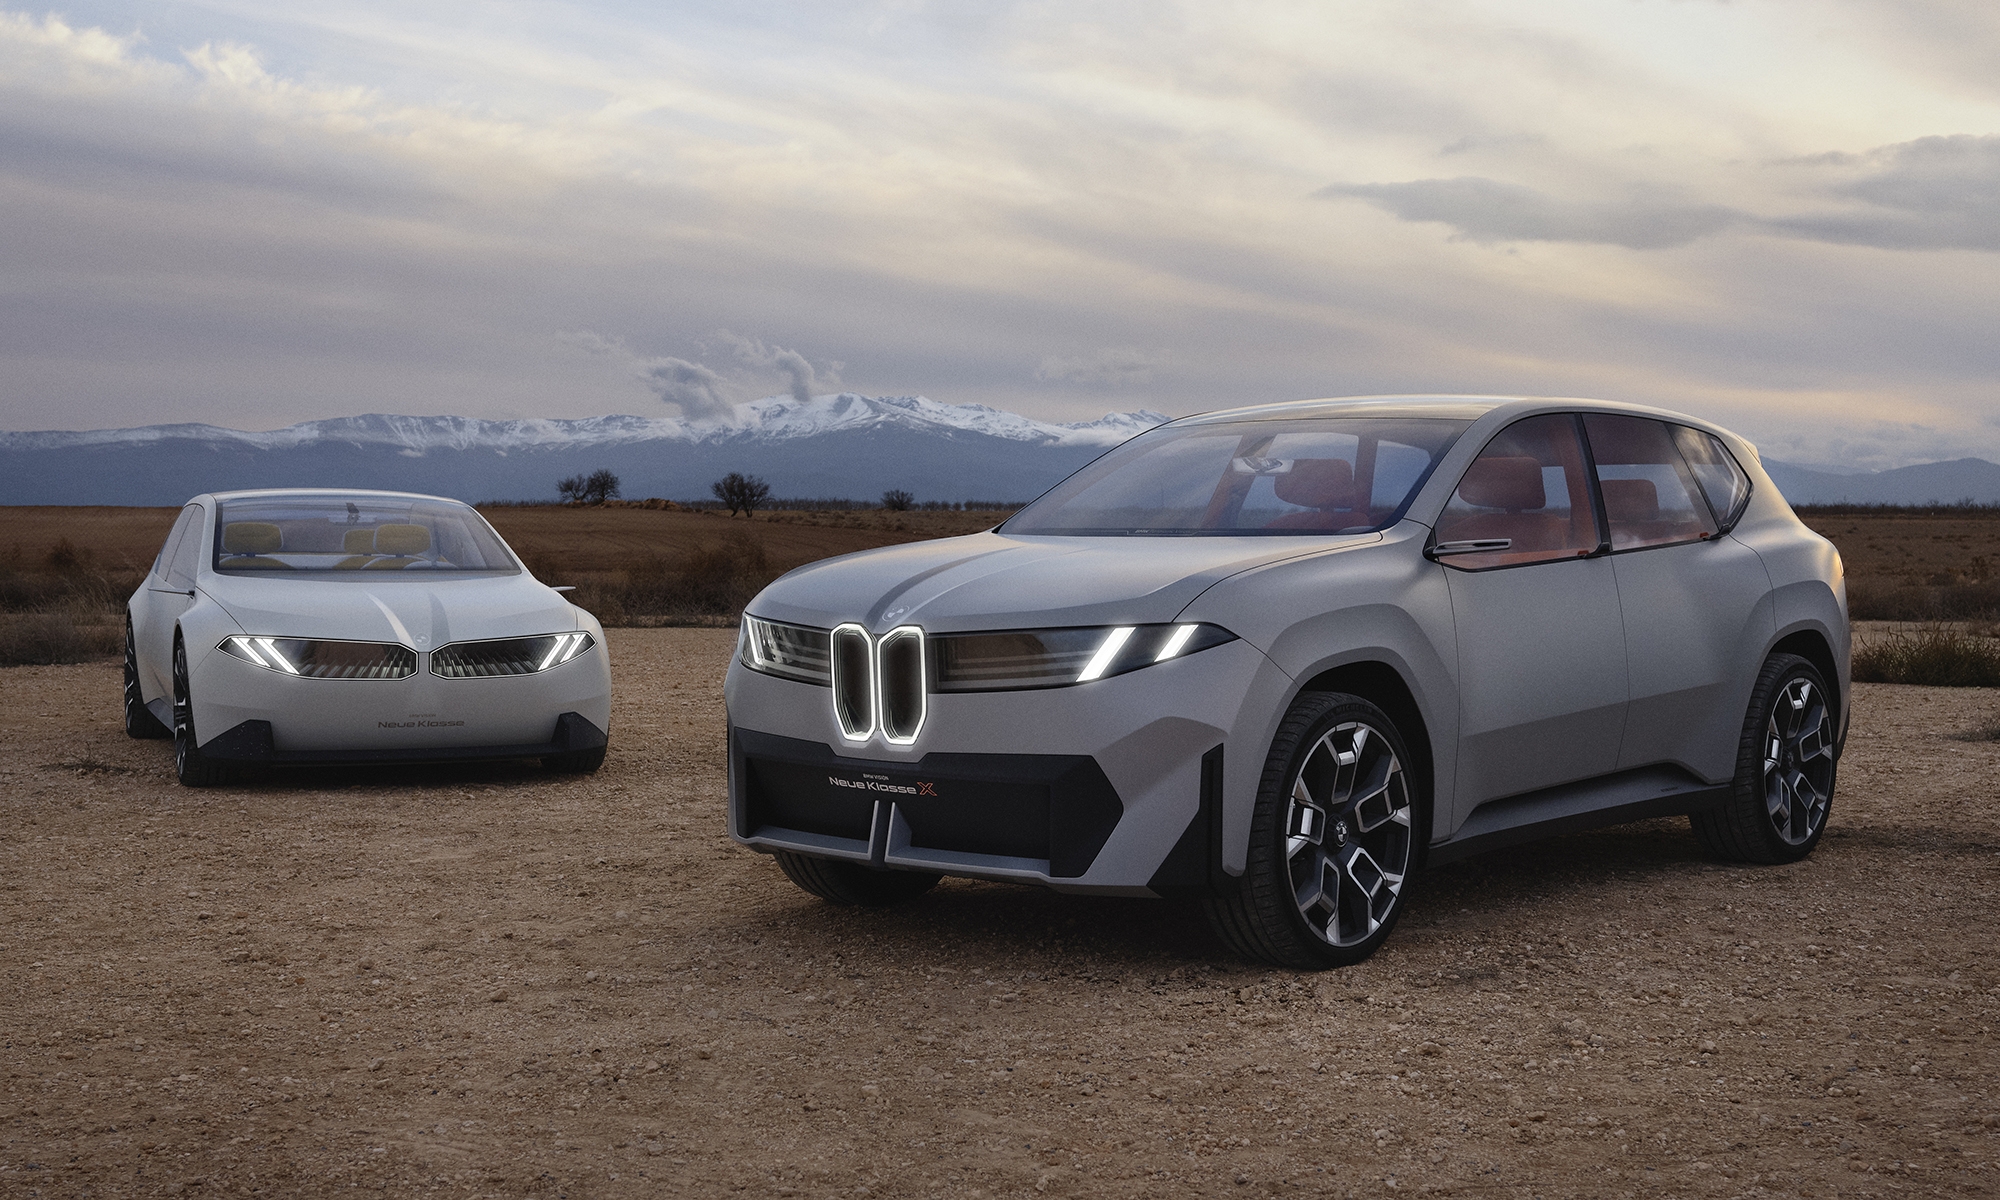 BMW lanzará toda una gama de coches eléctricos basados en la plataforma Neue Klasse, empezando por el iX3.